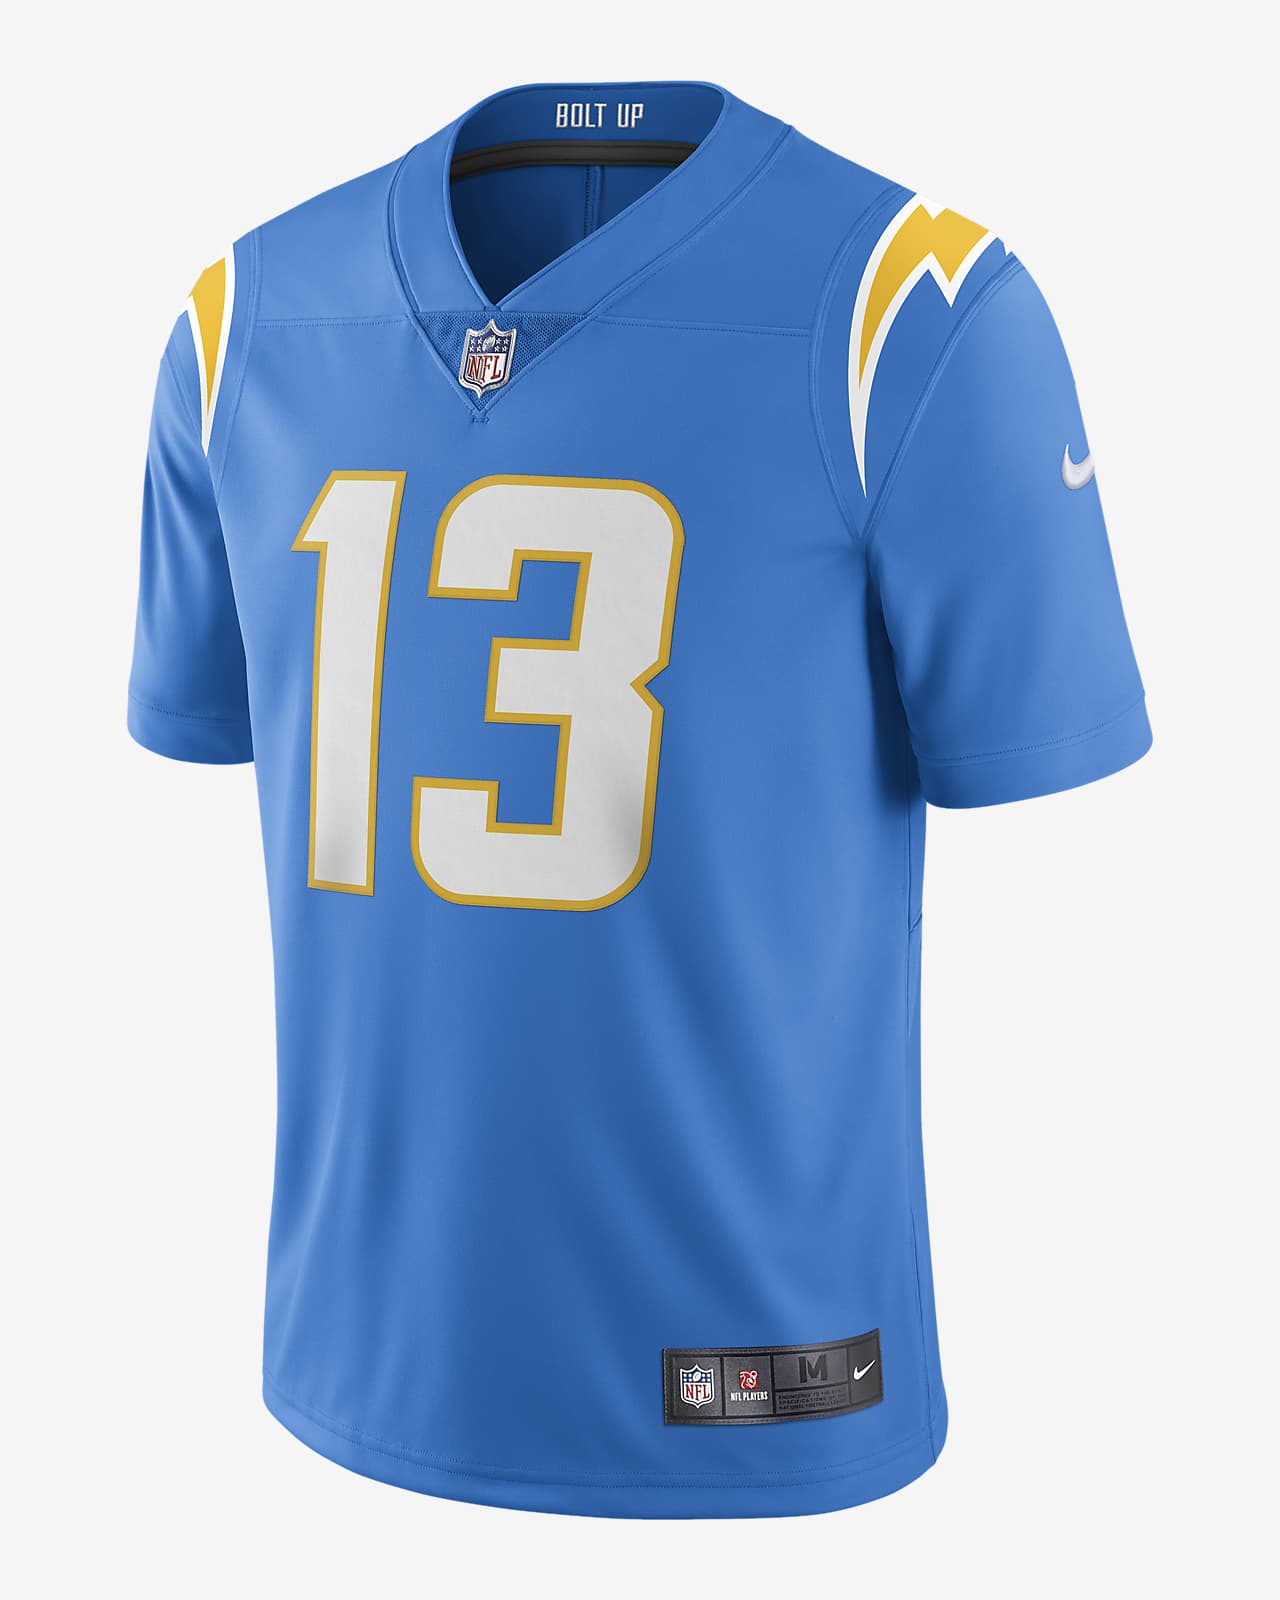 Jersey de fútbol edición limitada para hombre NFL Los Angeles Chargers Vapor Untouchable Nike.com